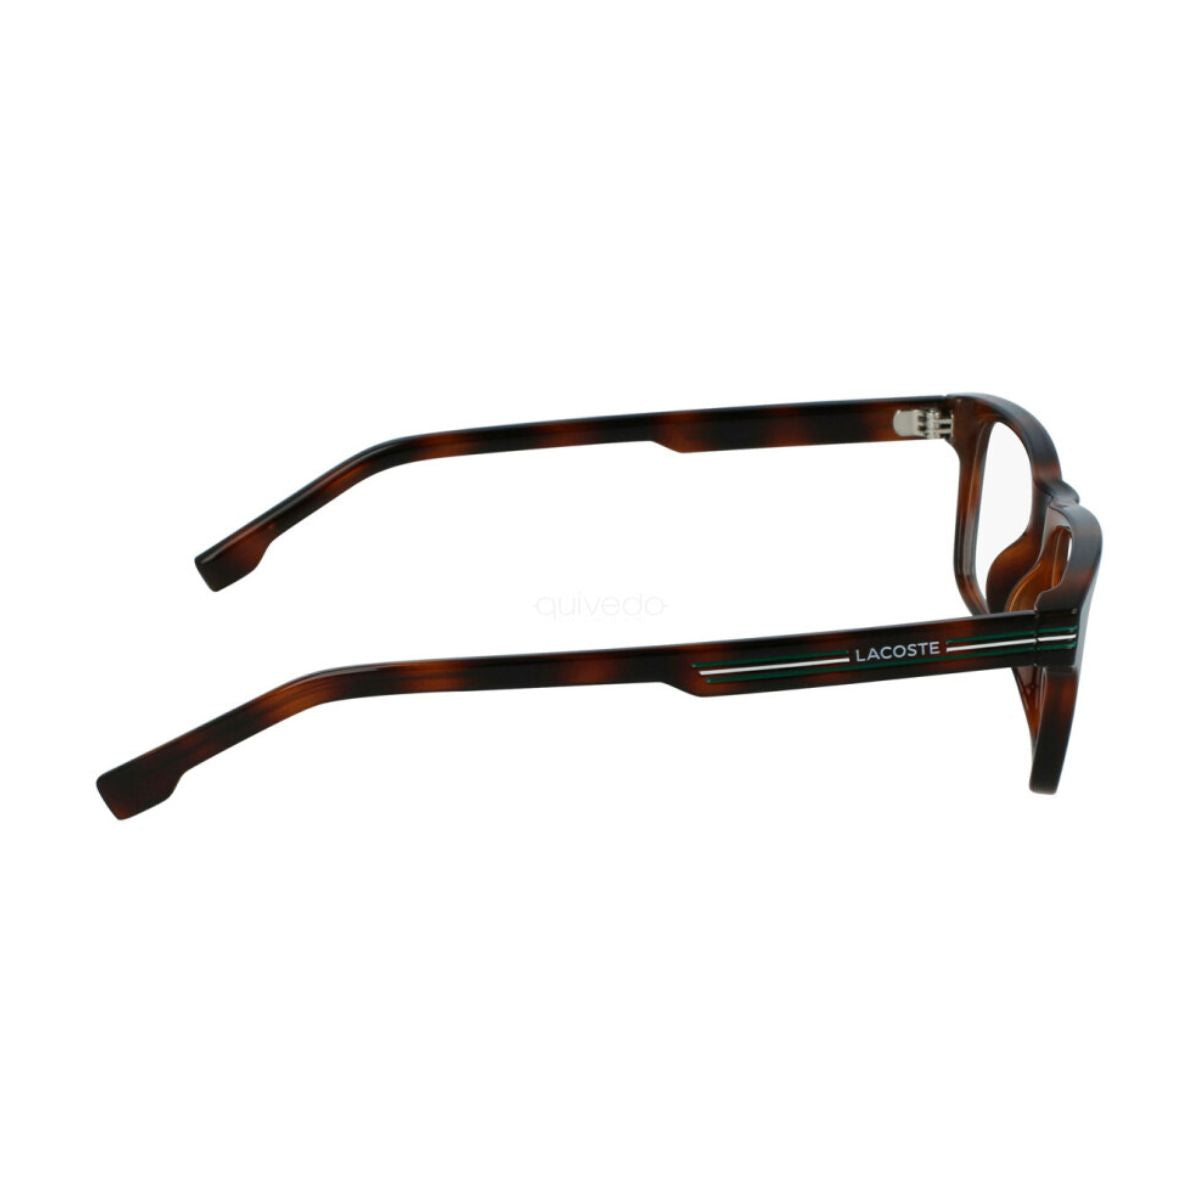 "best Lacoste 2886 230 eyesight glasses frame for men and women online at optorium"